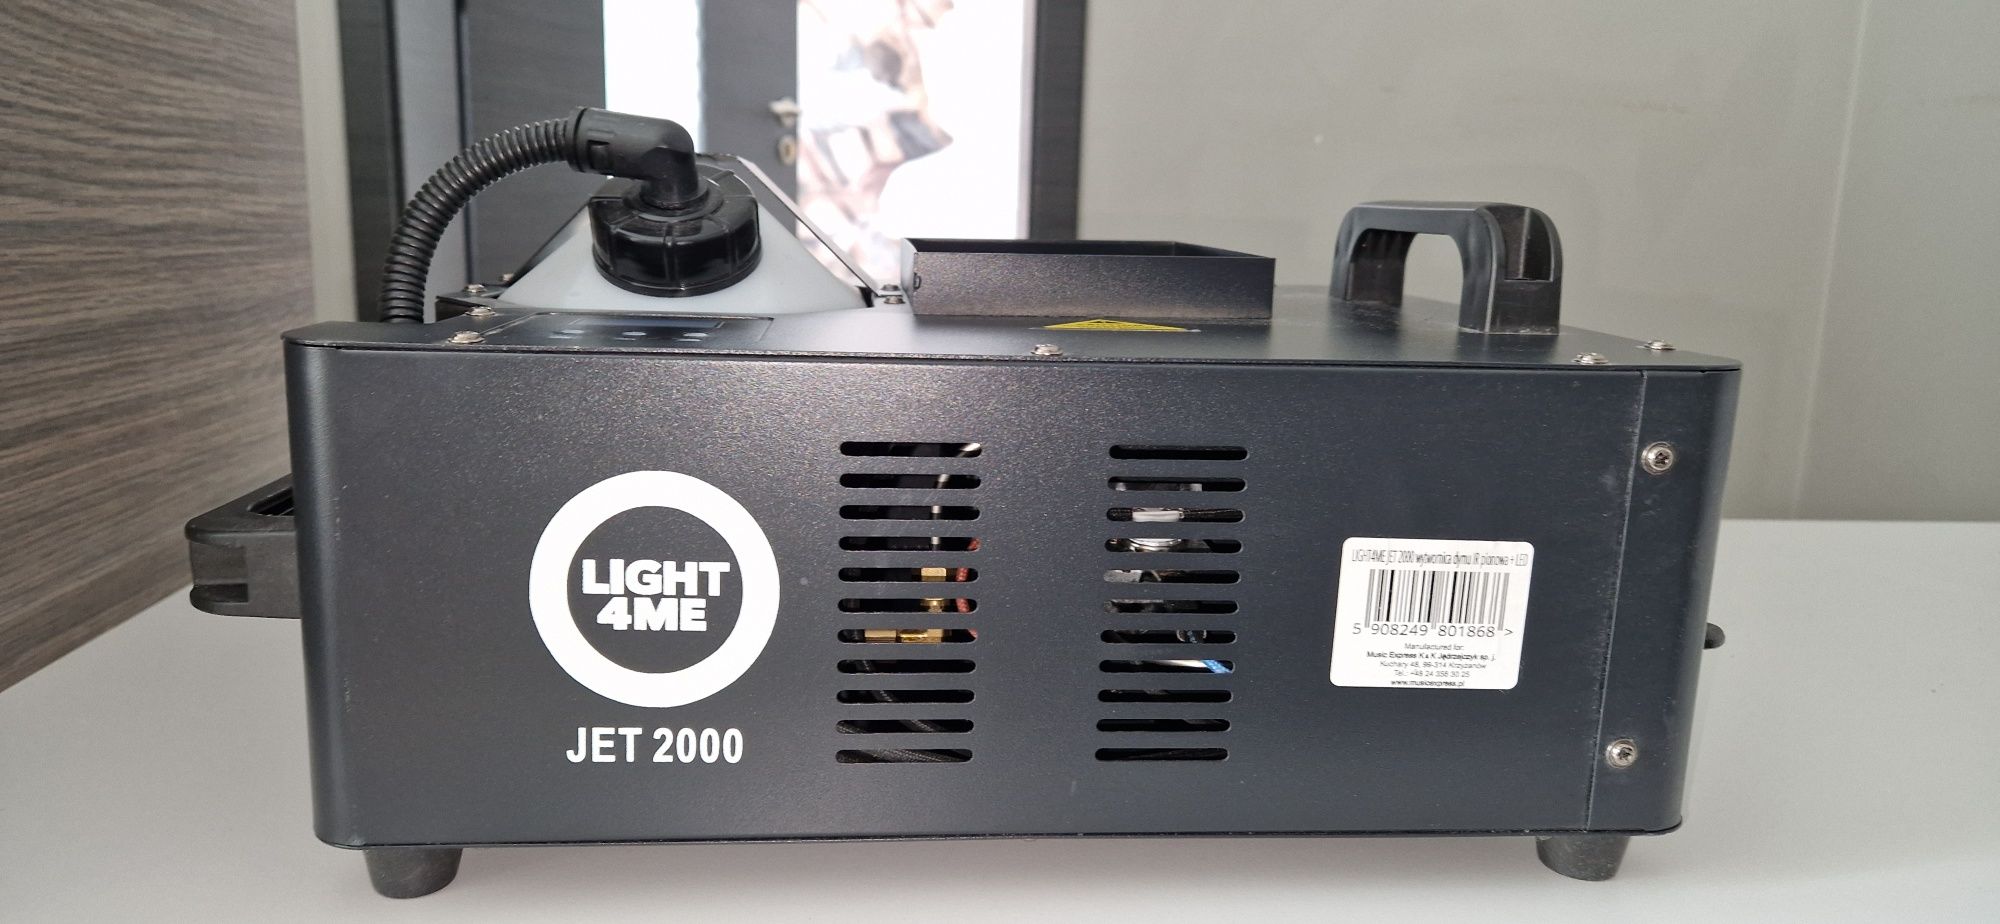 LIGHT4ME JET 2000 wytwornica dymu pionowego LED + pilot IR